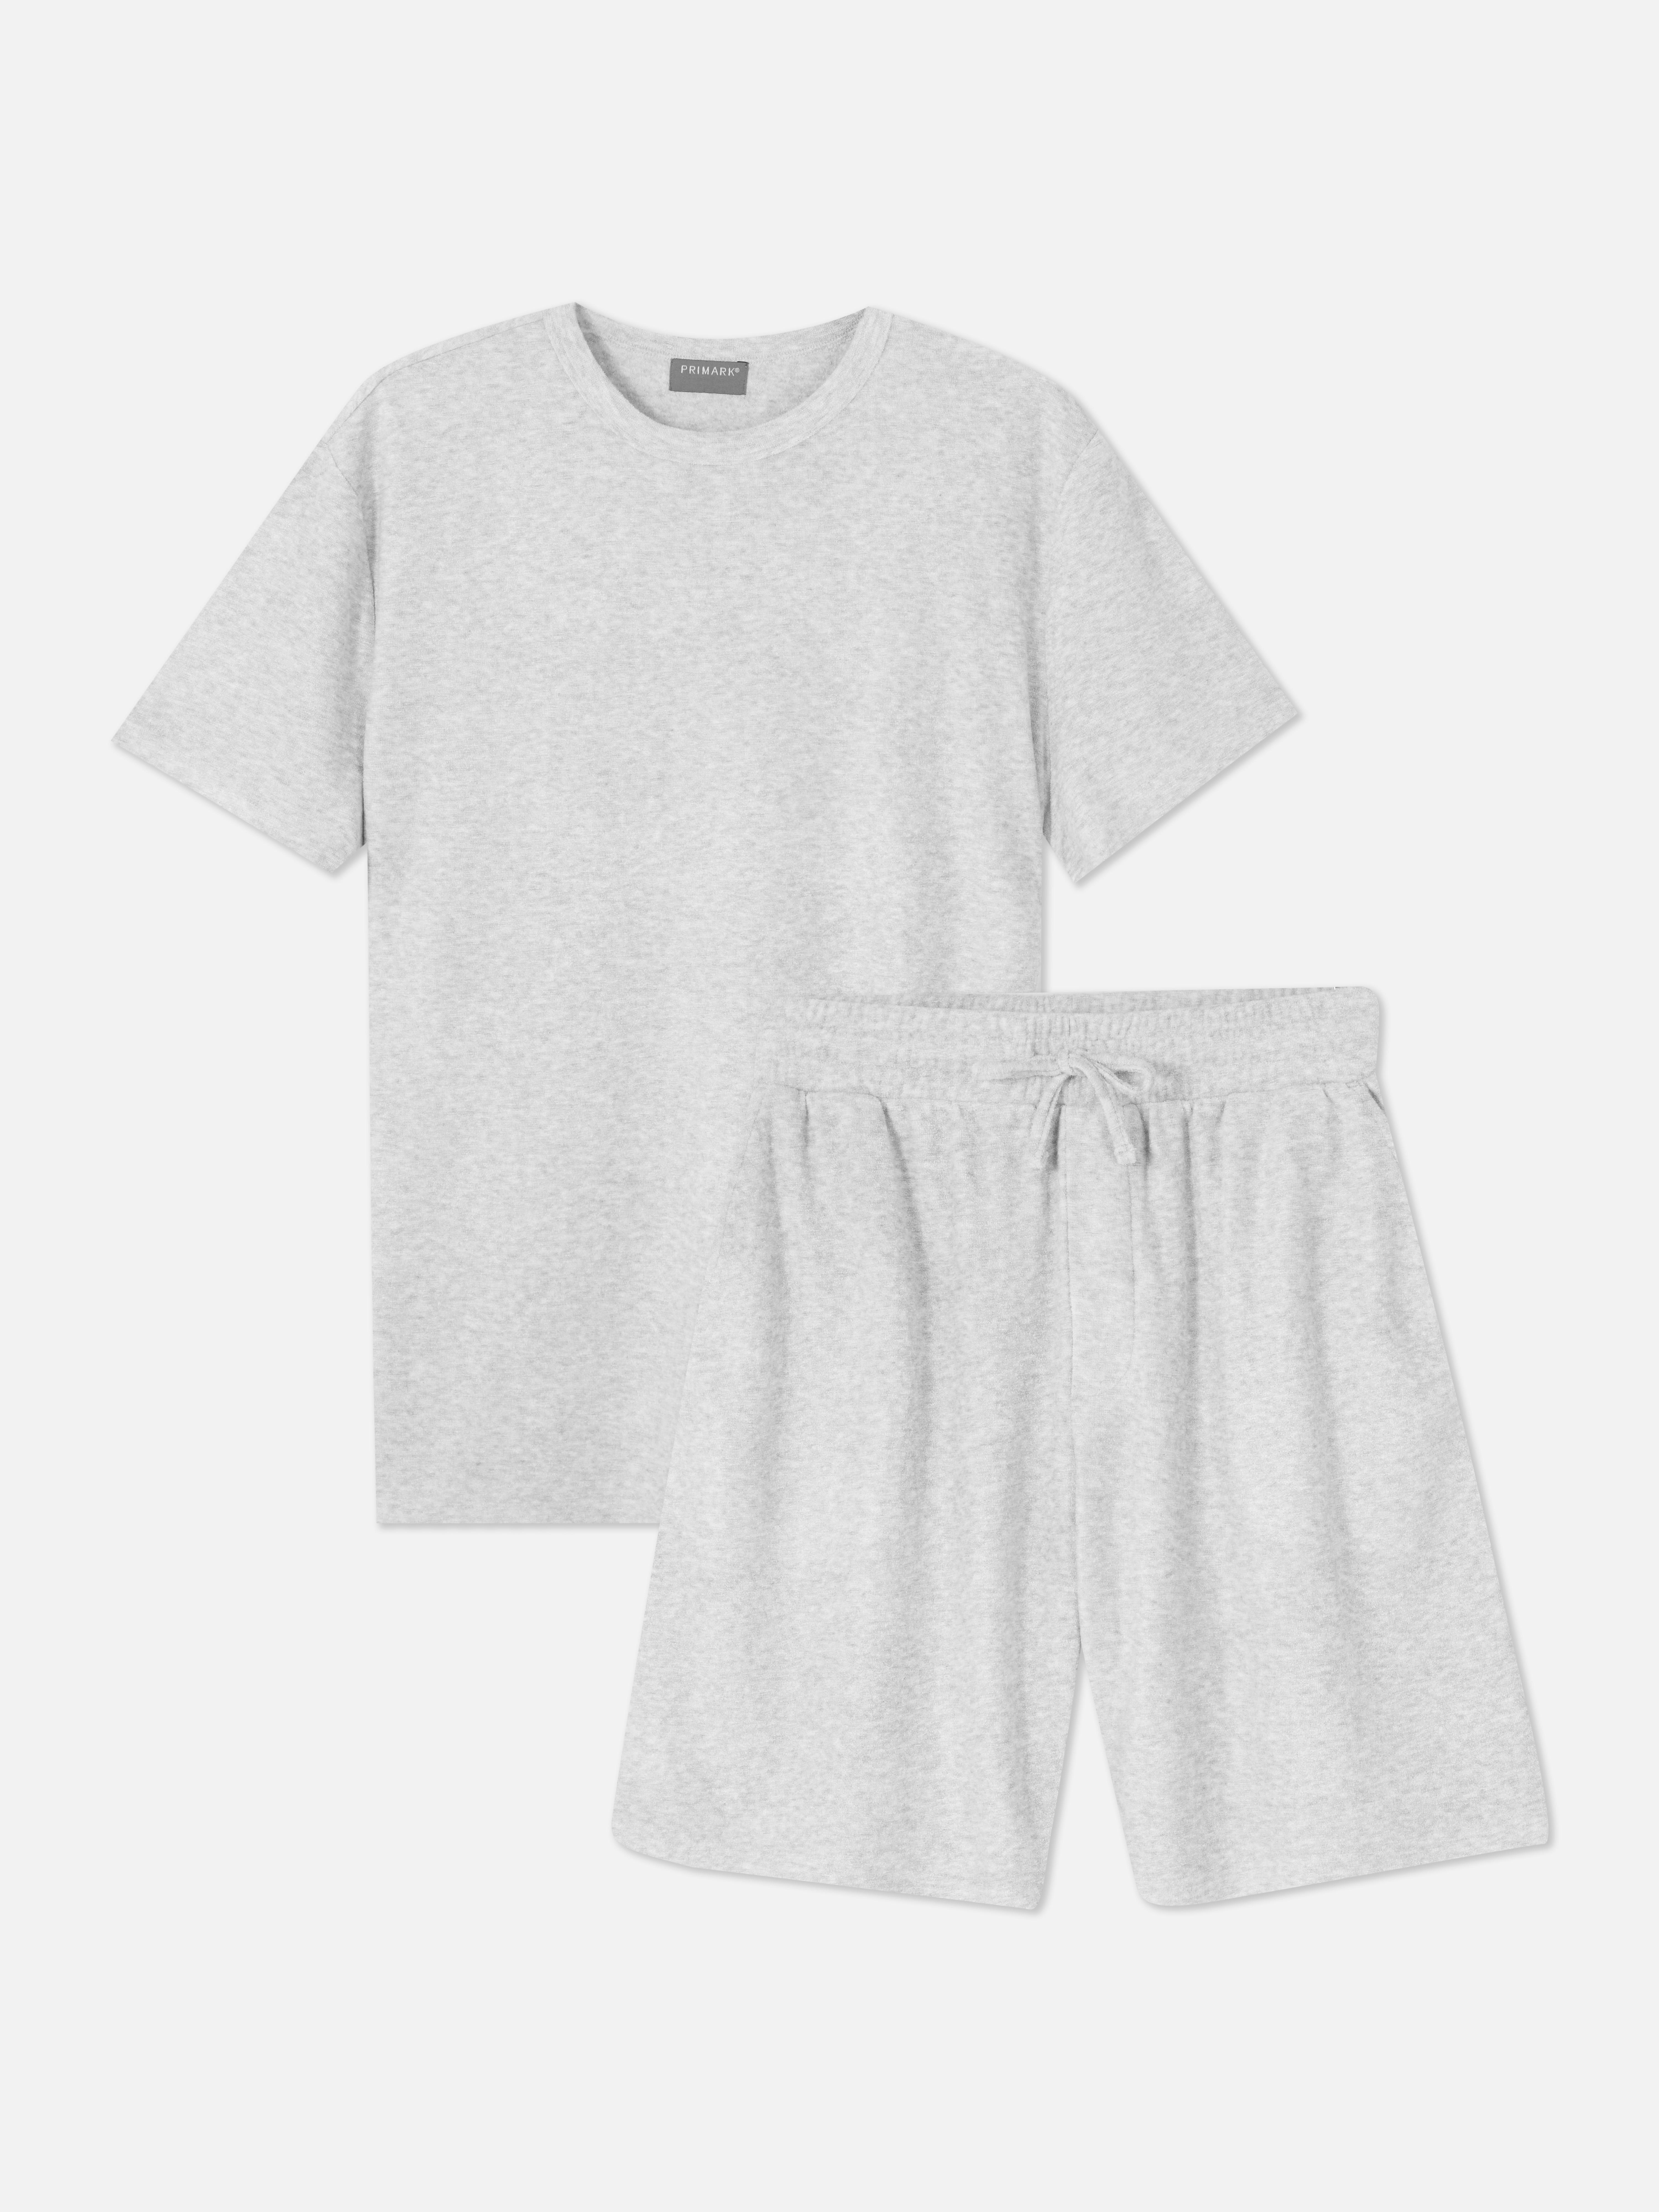 Matching Lounge Shorts and T-shirt set